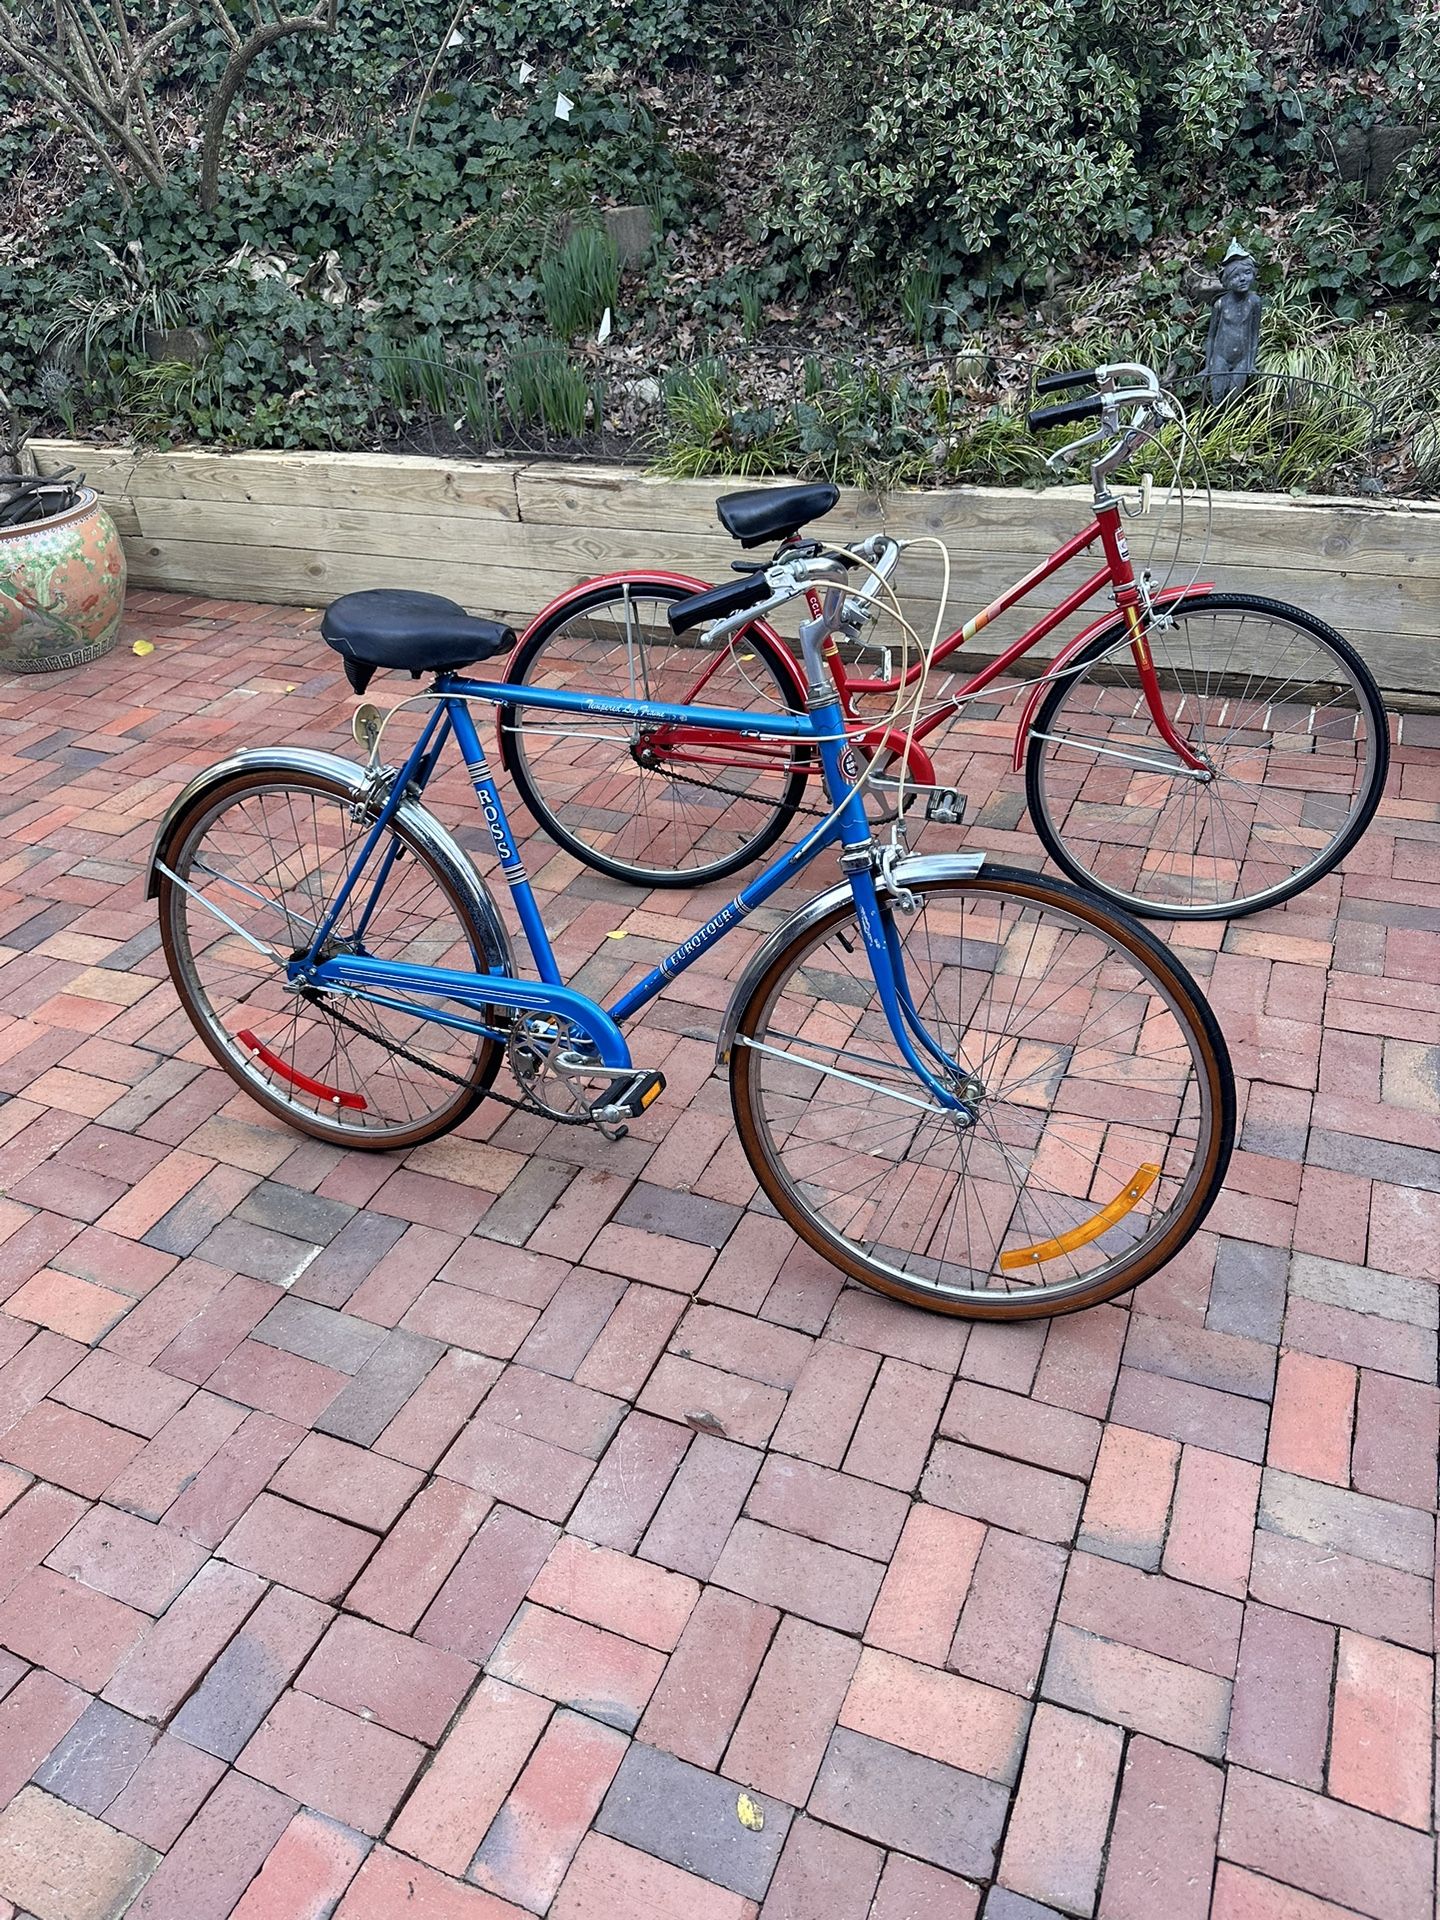 1976 Ross Bike And 1976 Columbia Bike